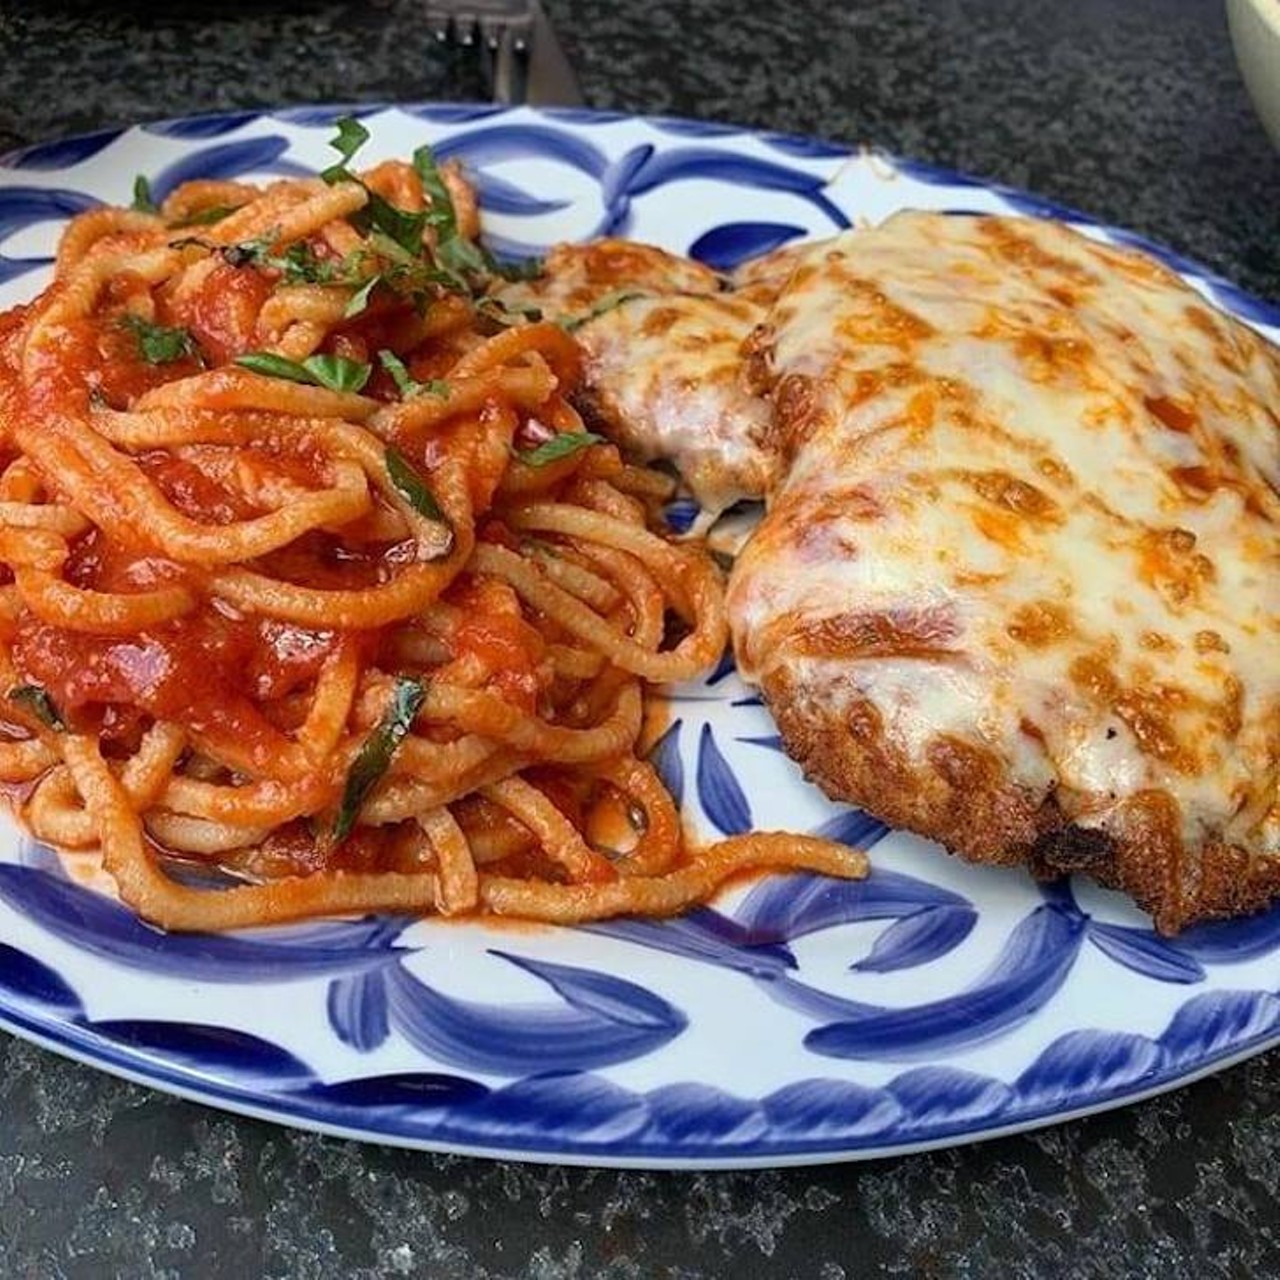 Mia's Italian Kitchen
